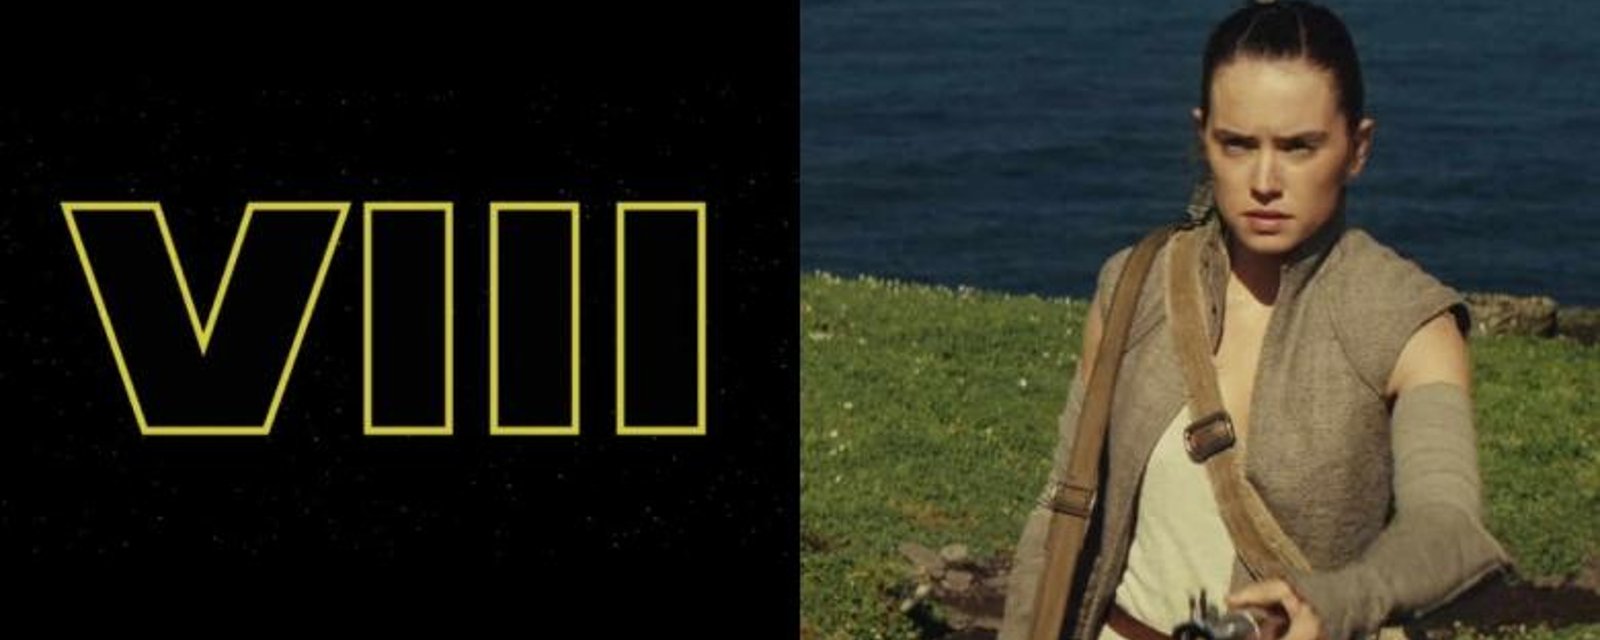 ARRÊTEZ TOUT: Voici les premières images du tournage de Star Wars 8!